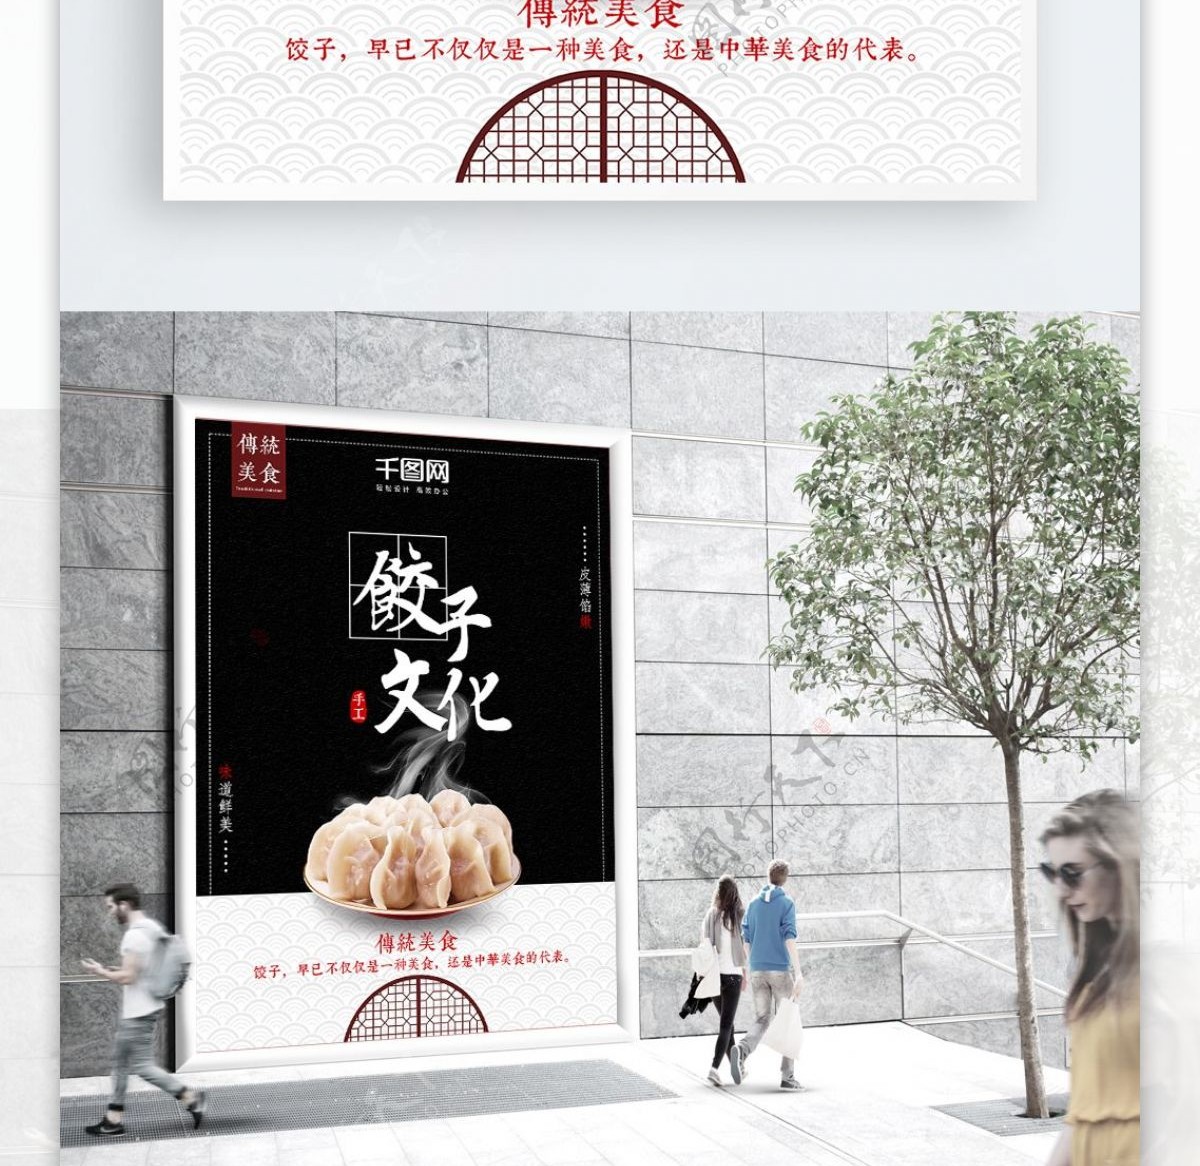 黑色中国风美食餐厅饺子节日海报